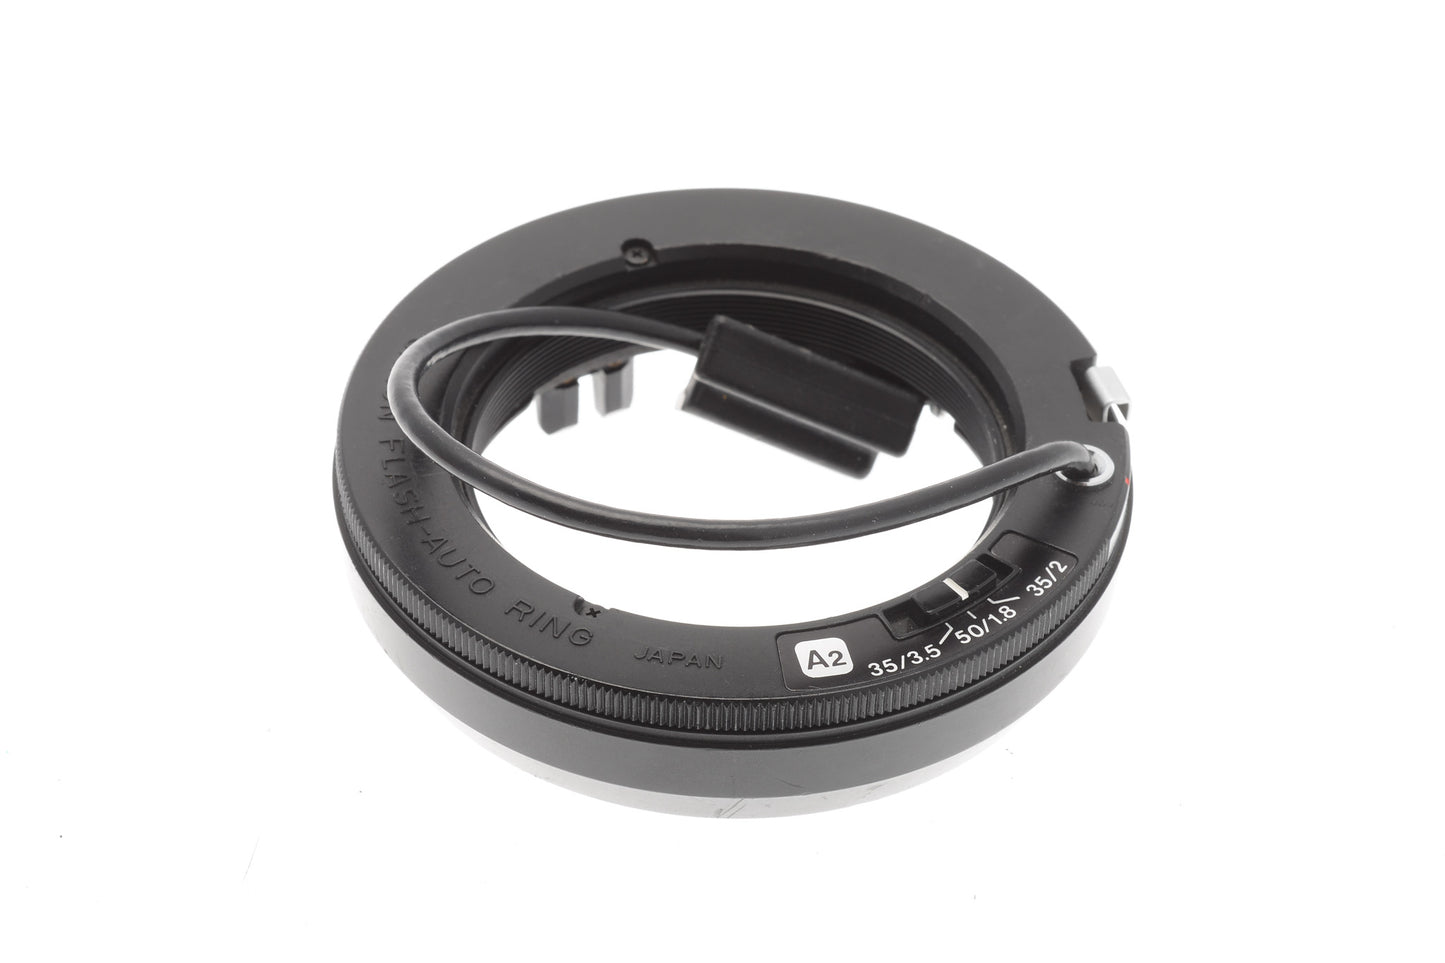 Canon Flash-Auto Ring A2 - Accessory